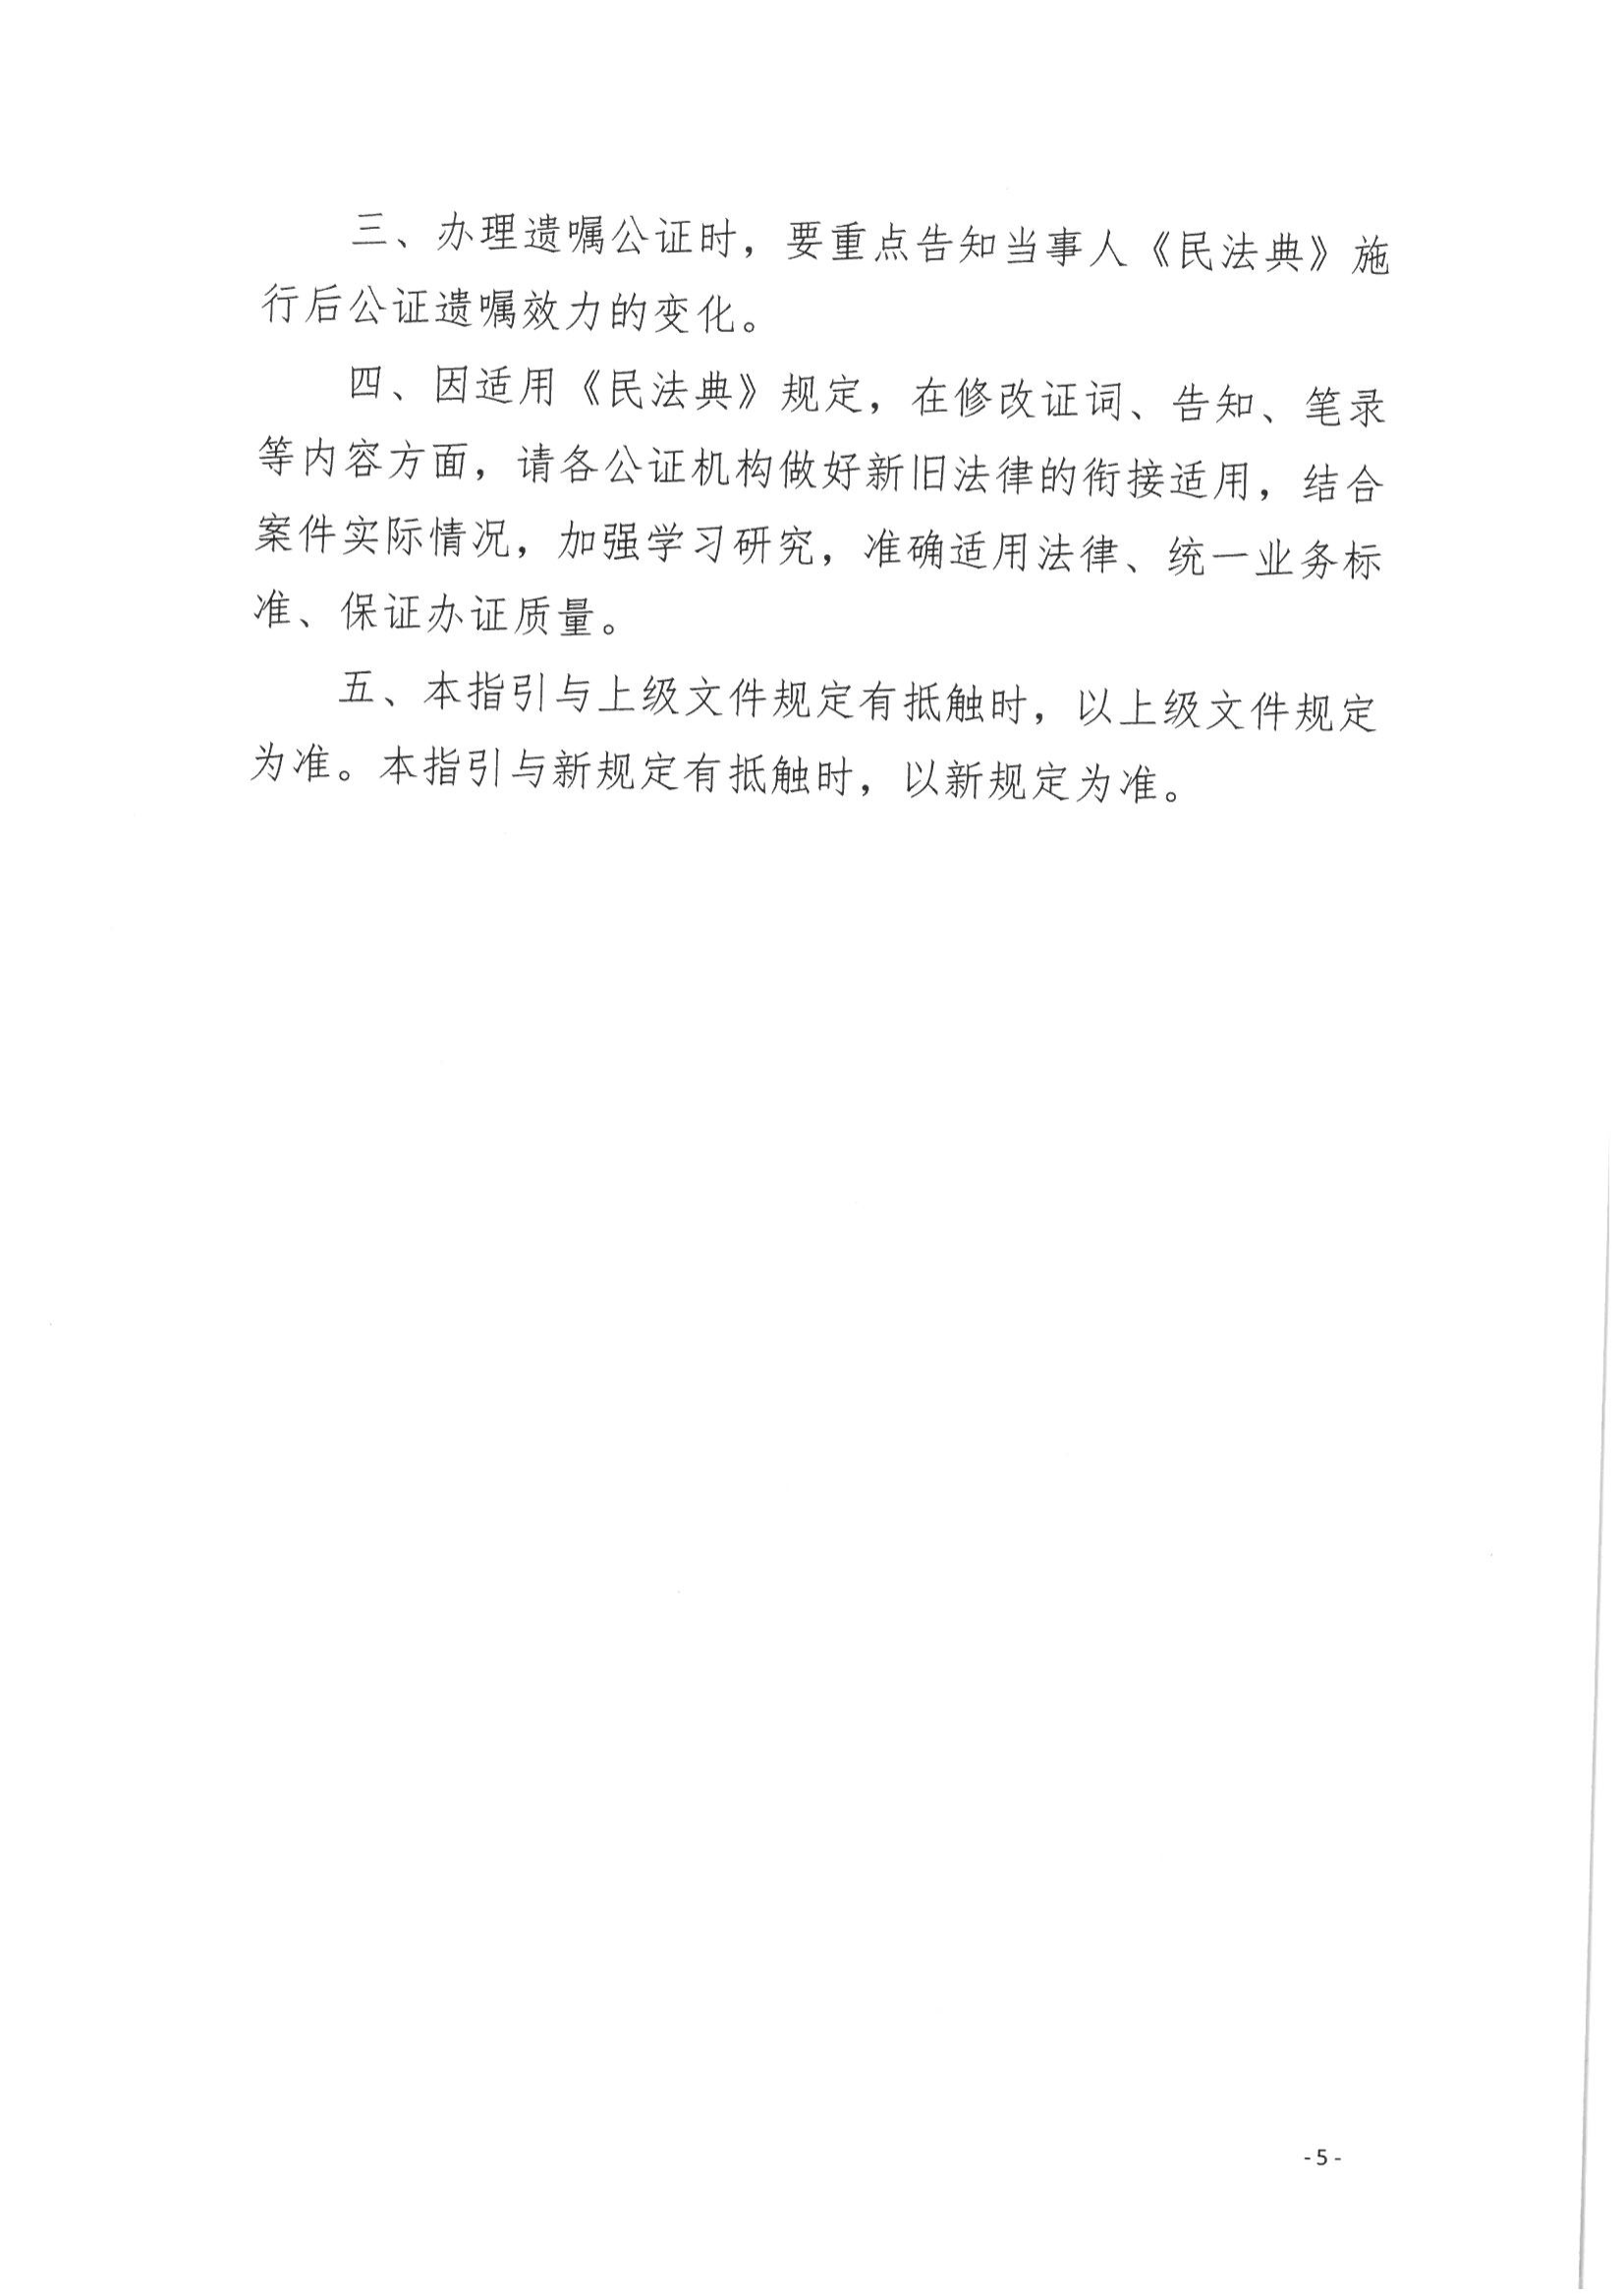 京公协字【2021】14号 《北京市公证协会规范执业指引【第12号】》_05